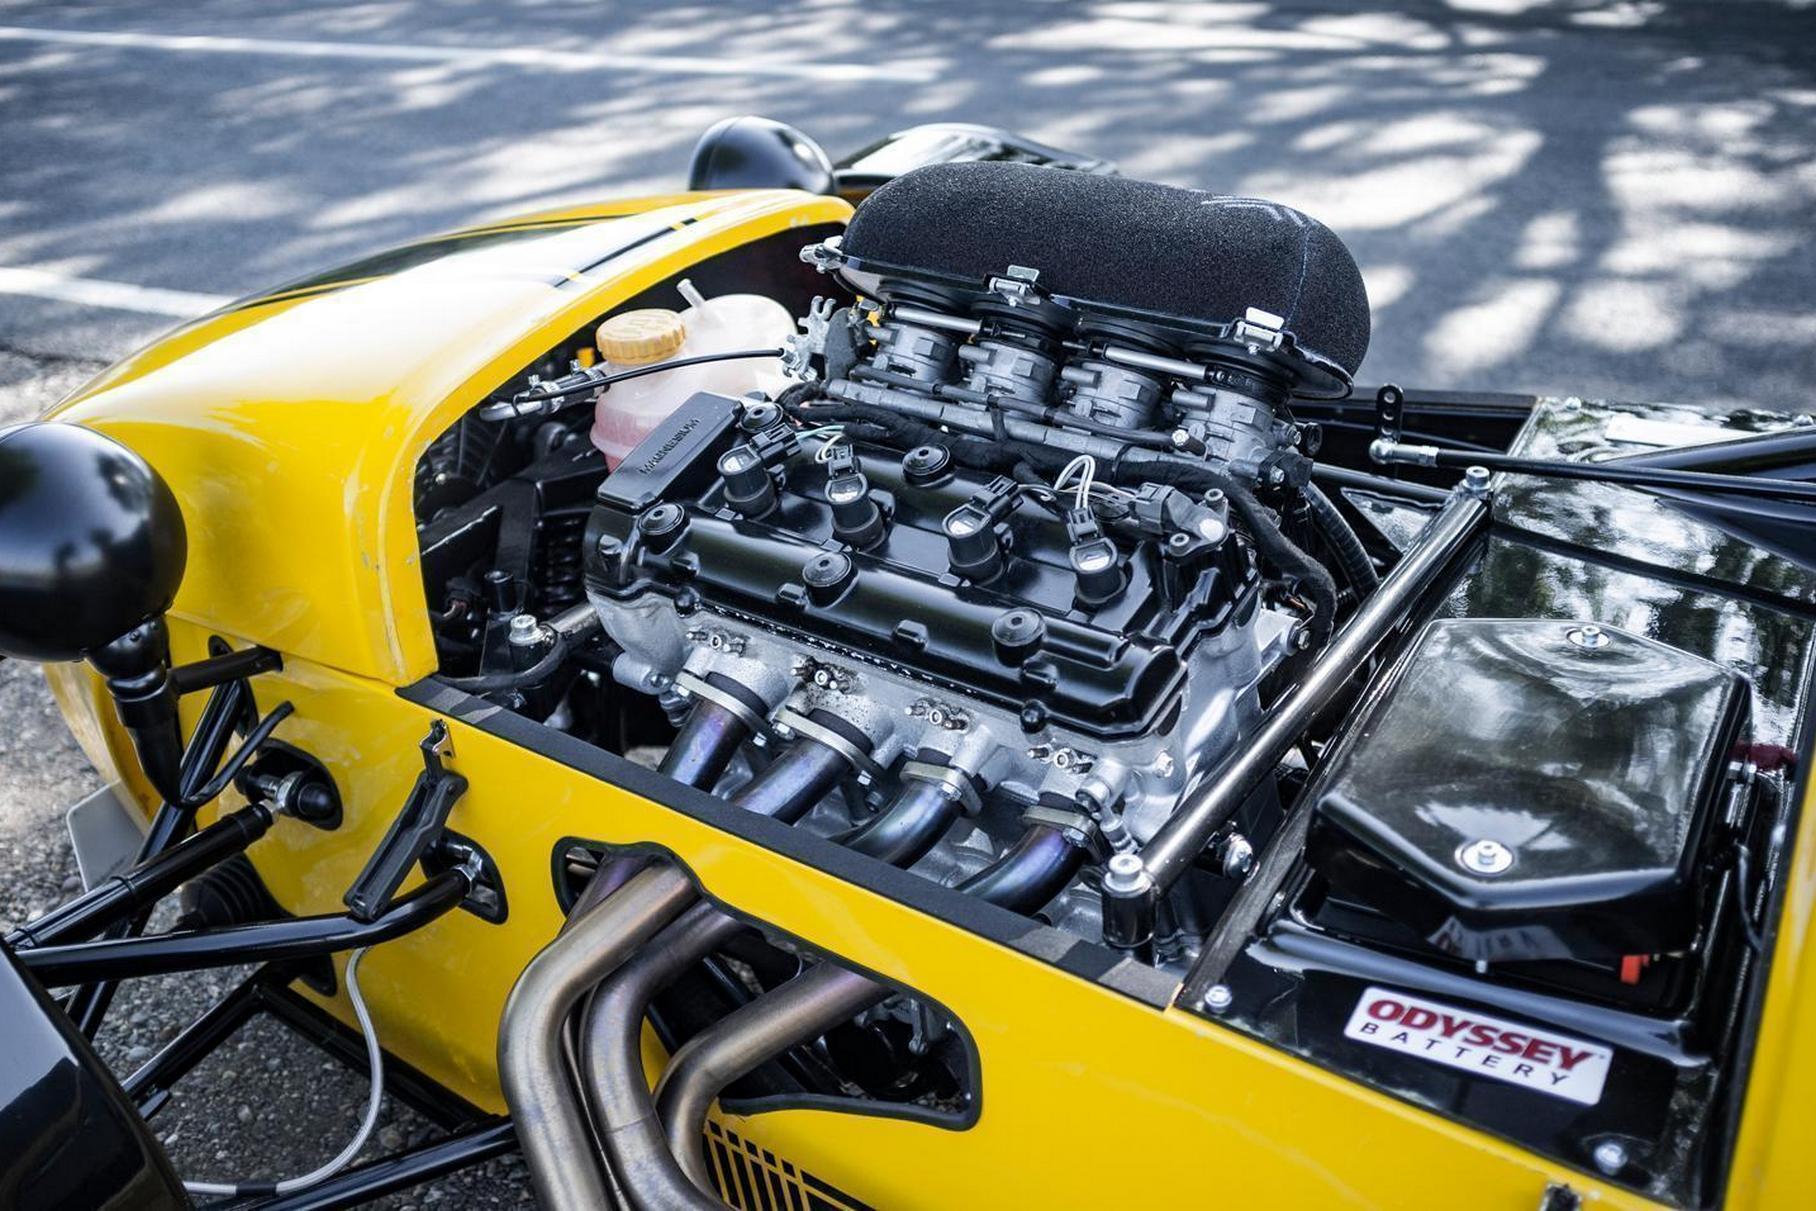 Двигатель от Suzuki Hayabusa под капотом реплики Lotus 7 фирмы MK Sportscars